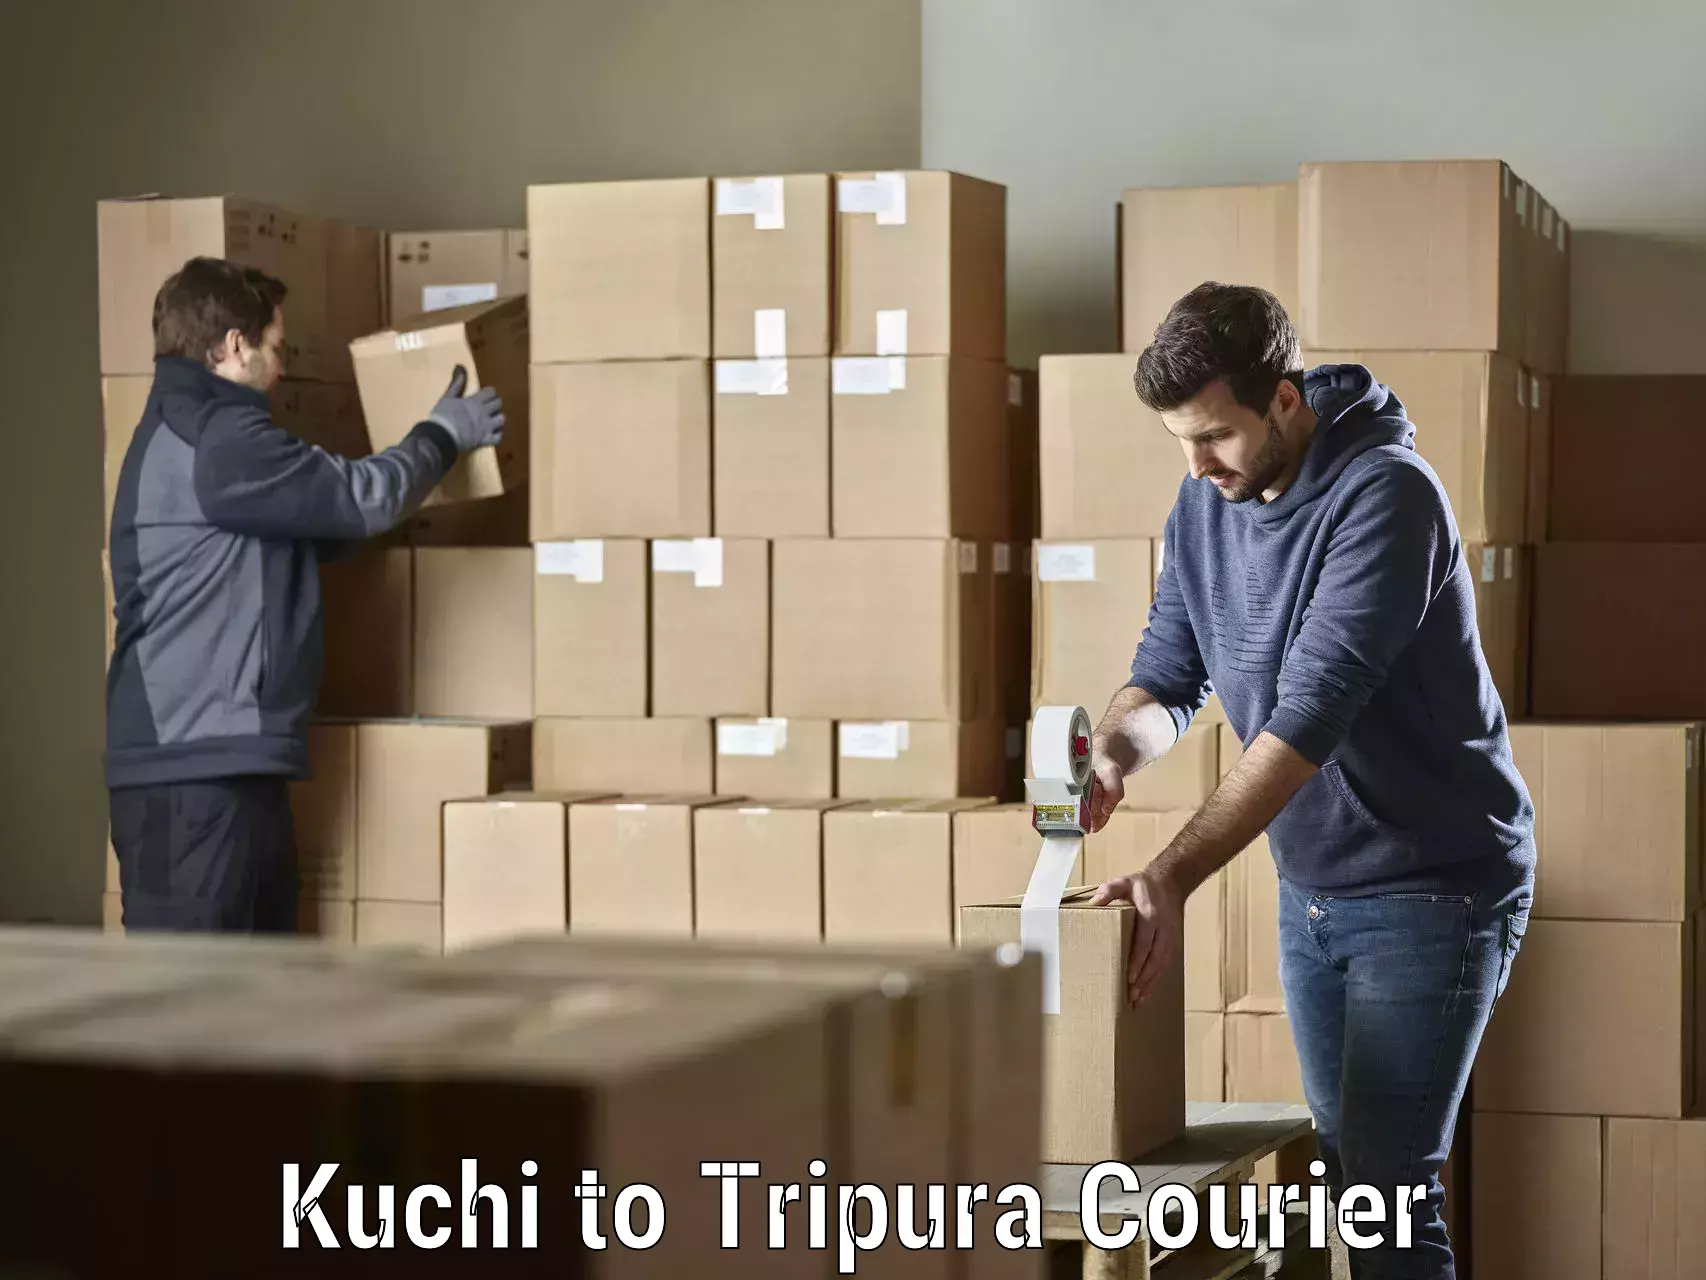 Professional courier handling Kuchi to IIIT Agartala